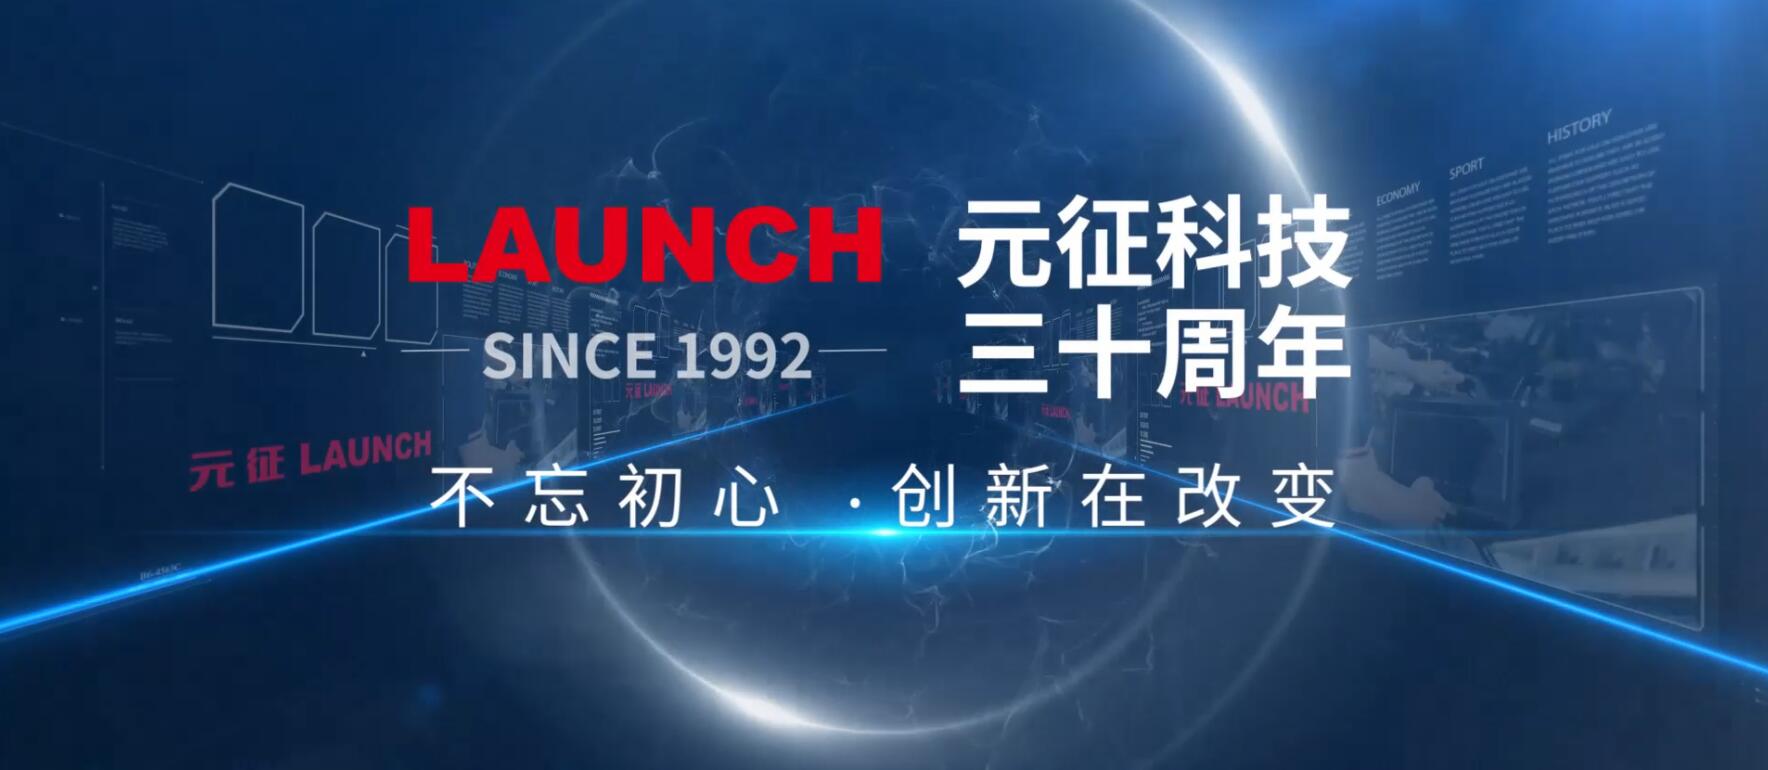 元征公司30周年企业宣传片